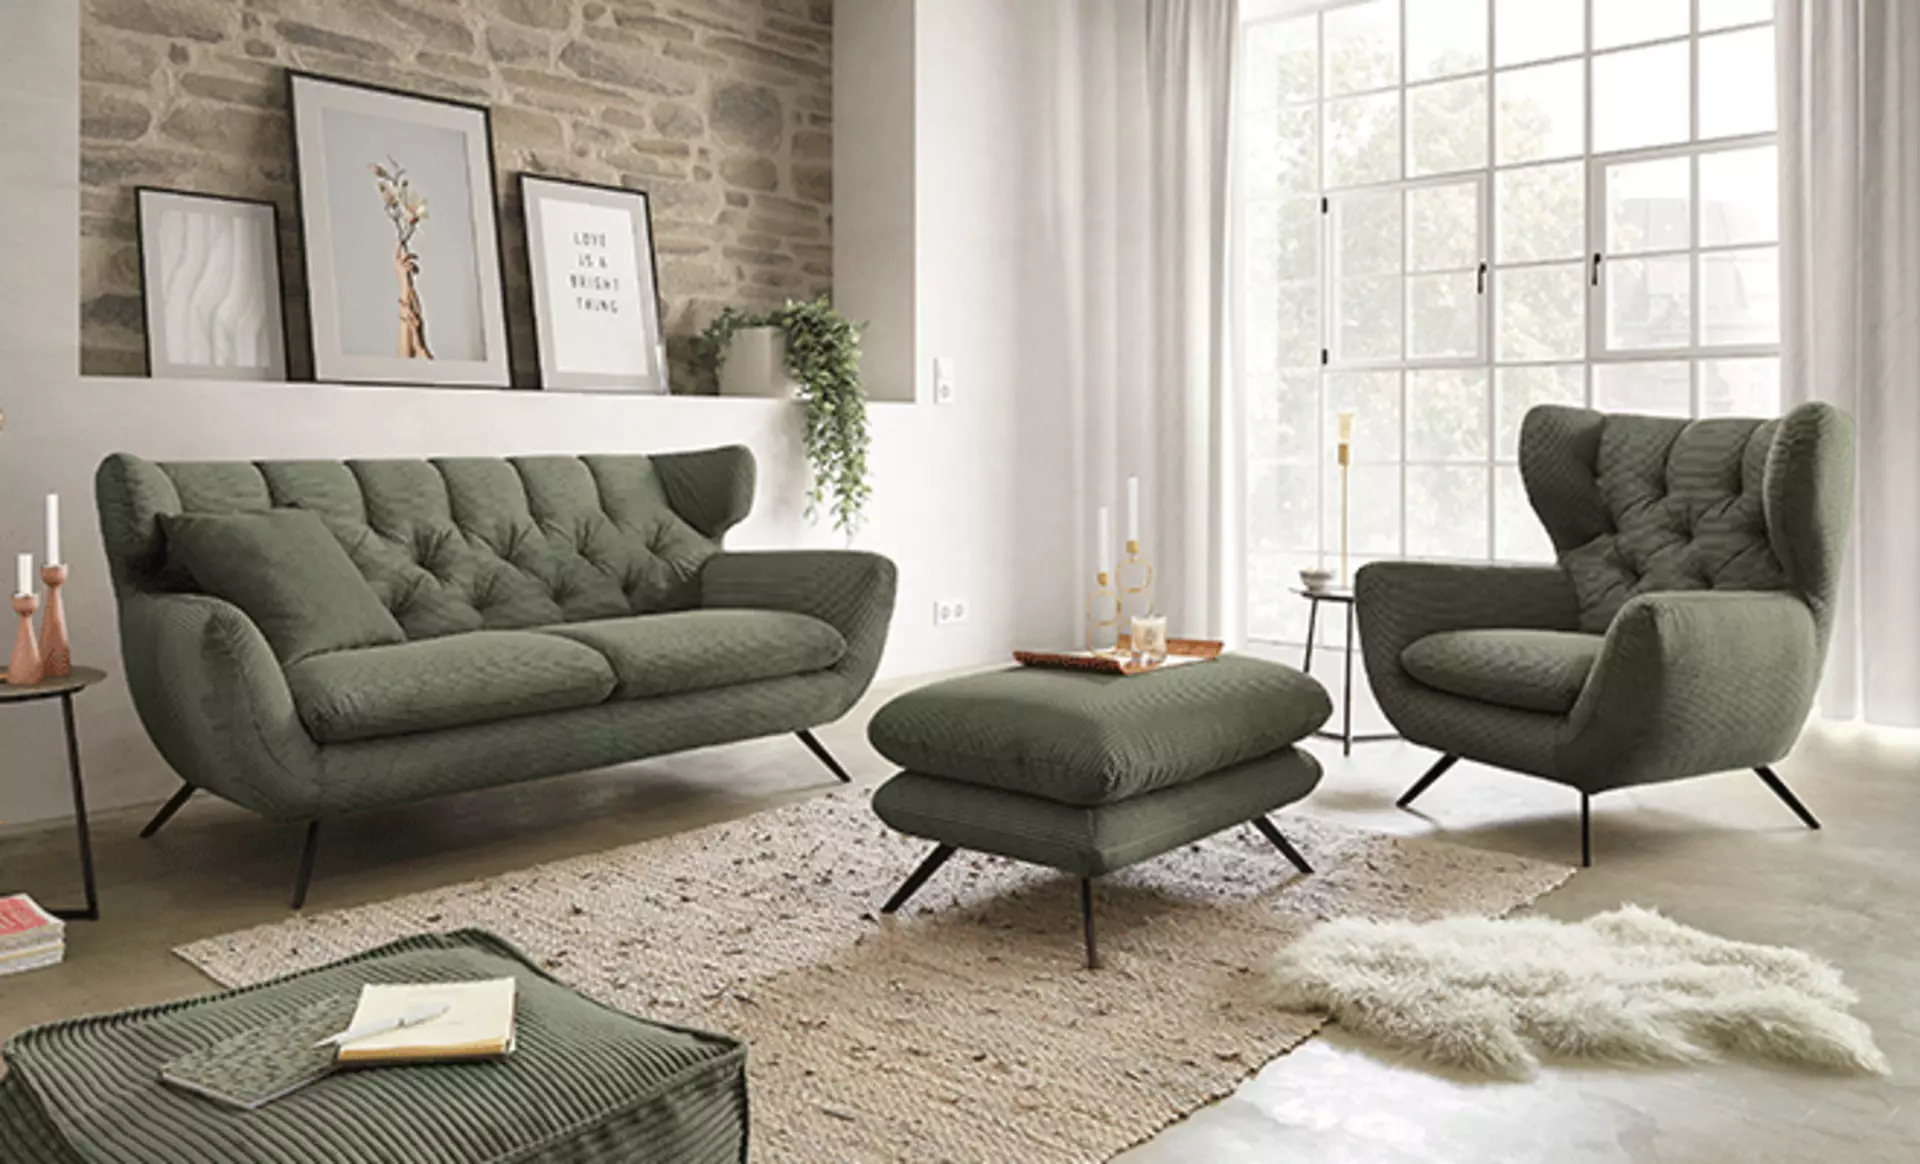 Royal Green im Wohnzimmer mit einer grünen Polstergarnitur inkl. Couch und Sessel